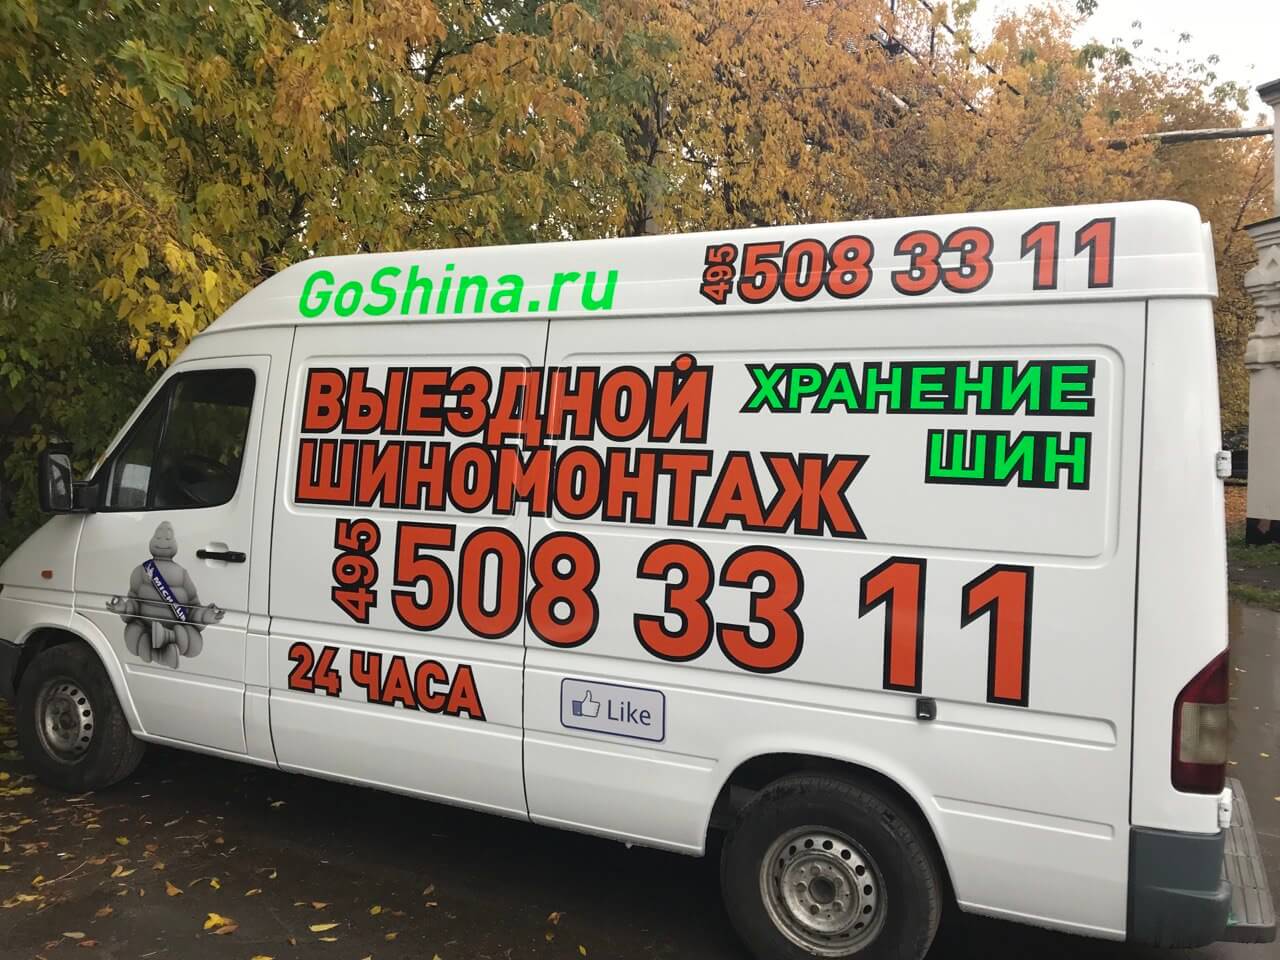 Ремонт шин в Санкт-Петербурге - цены на ремонт шины в Hofmann сервис